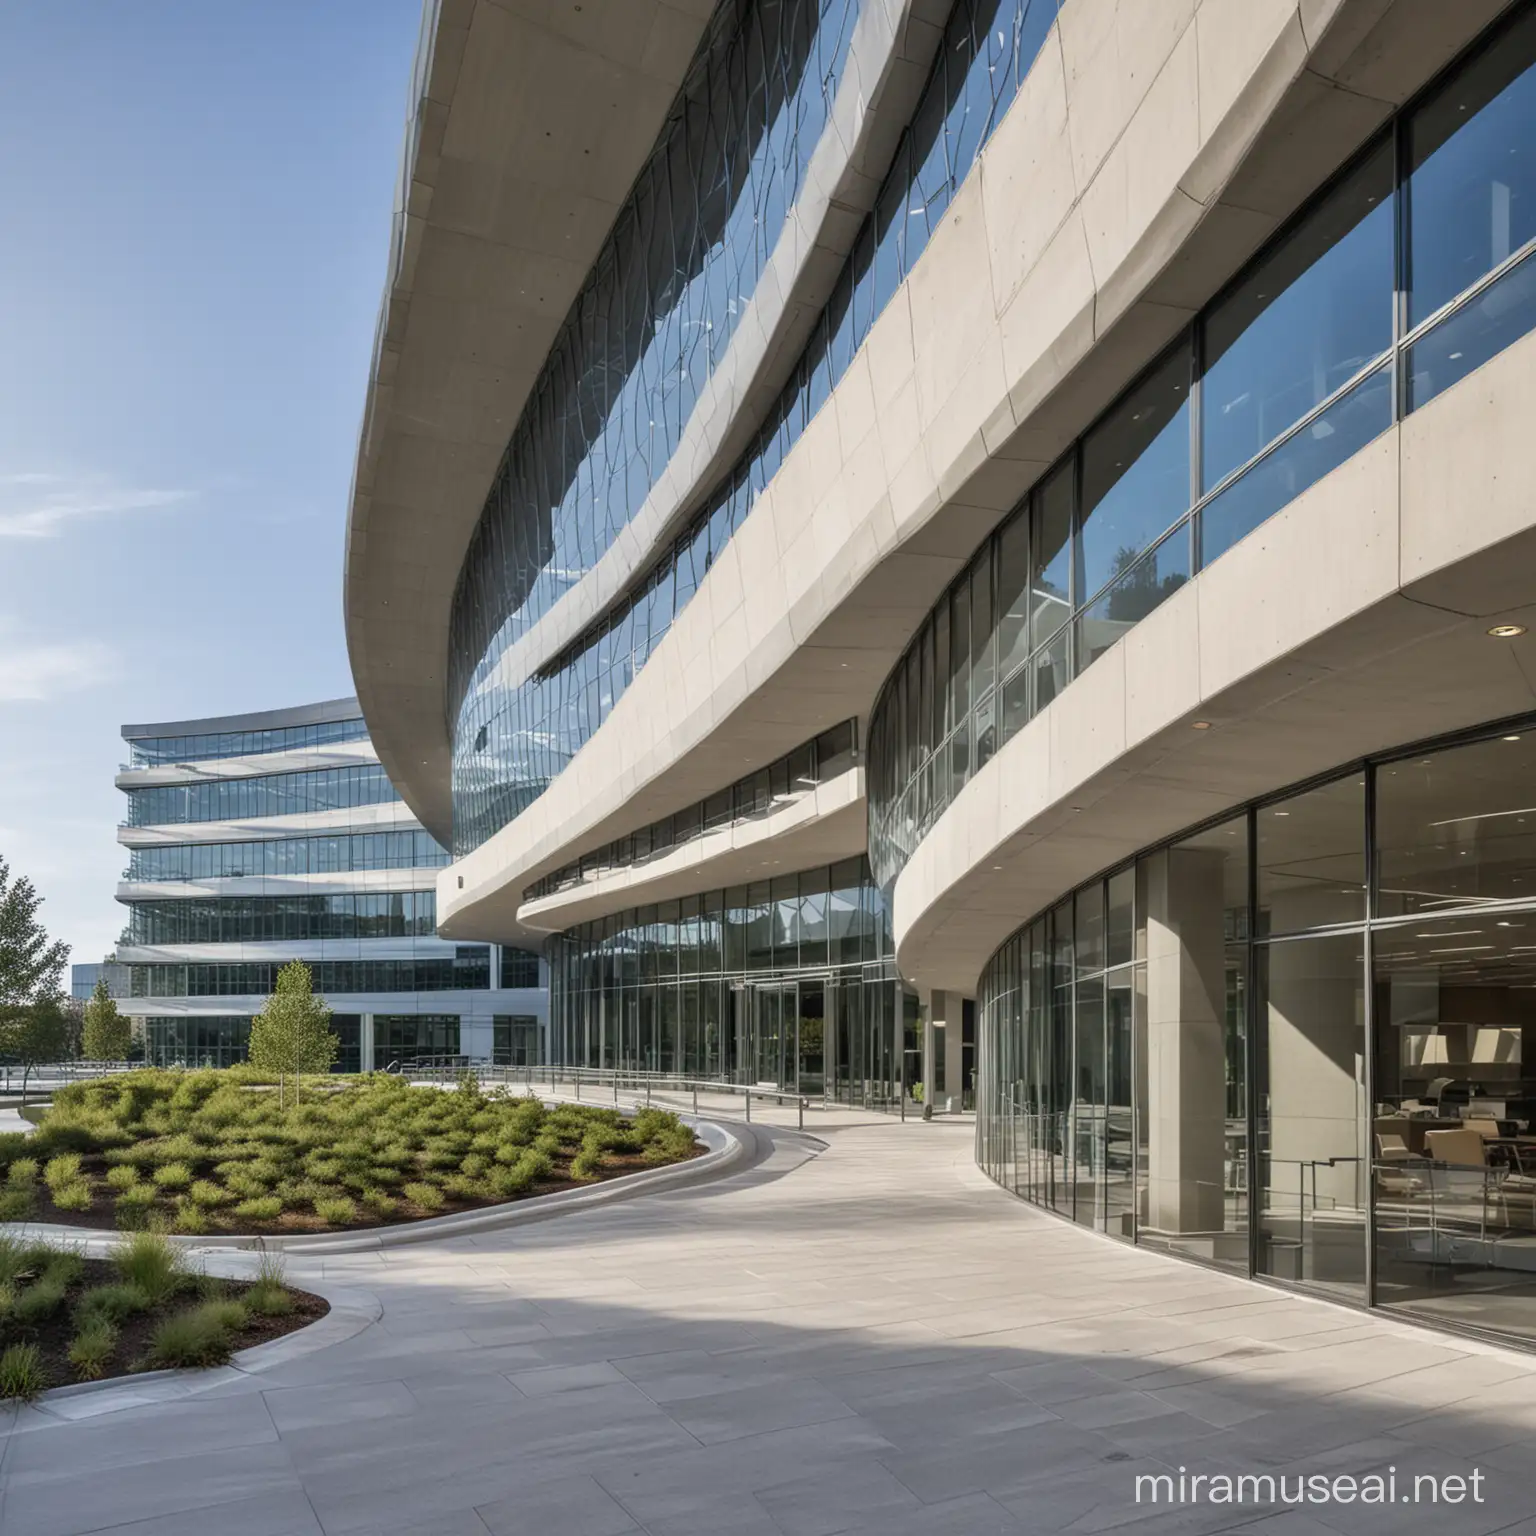 edificio corporativo de oficinas para Nvidia que se caracteriza por una arquitectura vanguardista que incorpora superficies cuadráticas curvas y rectas en toda su estructura
